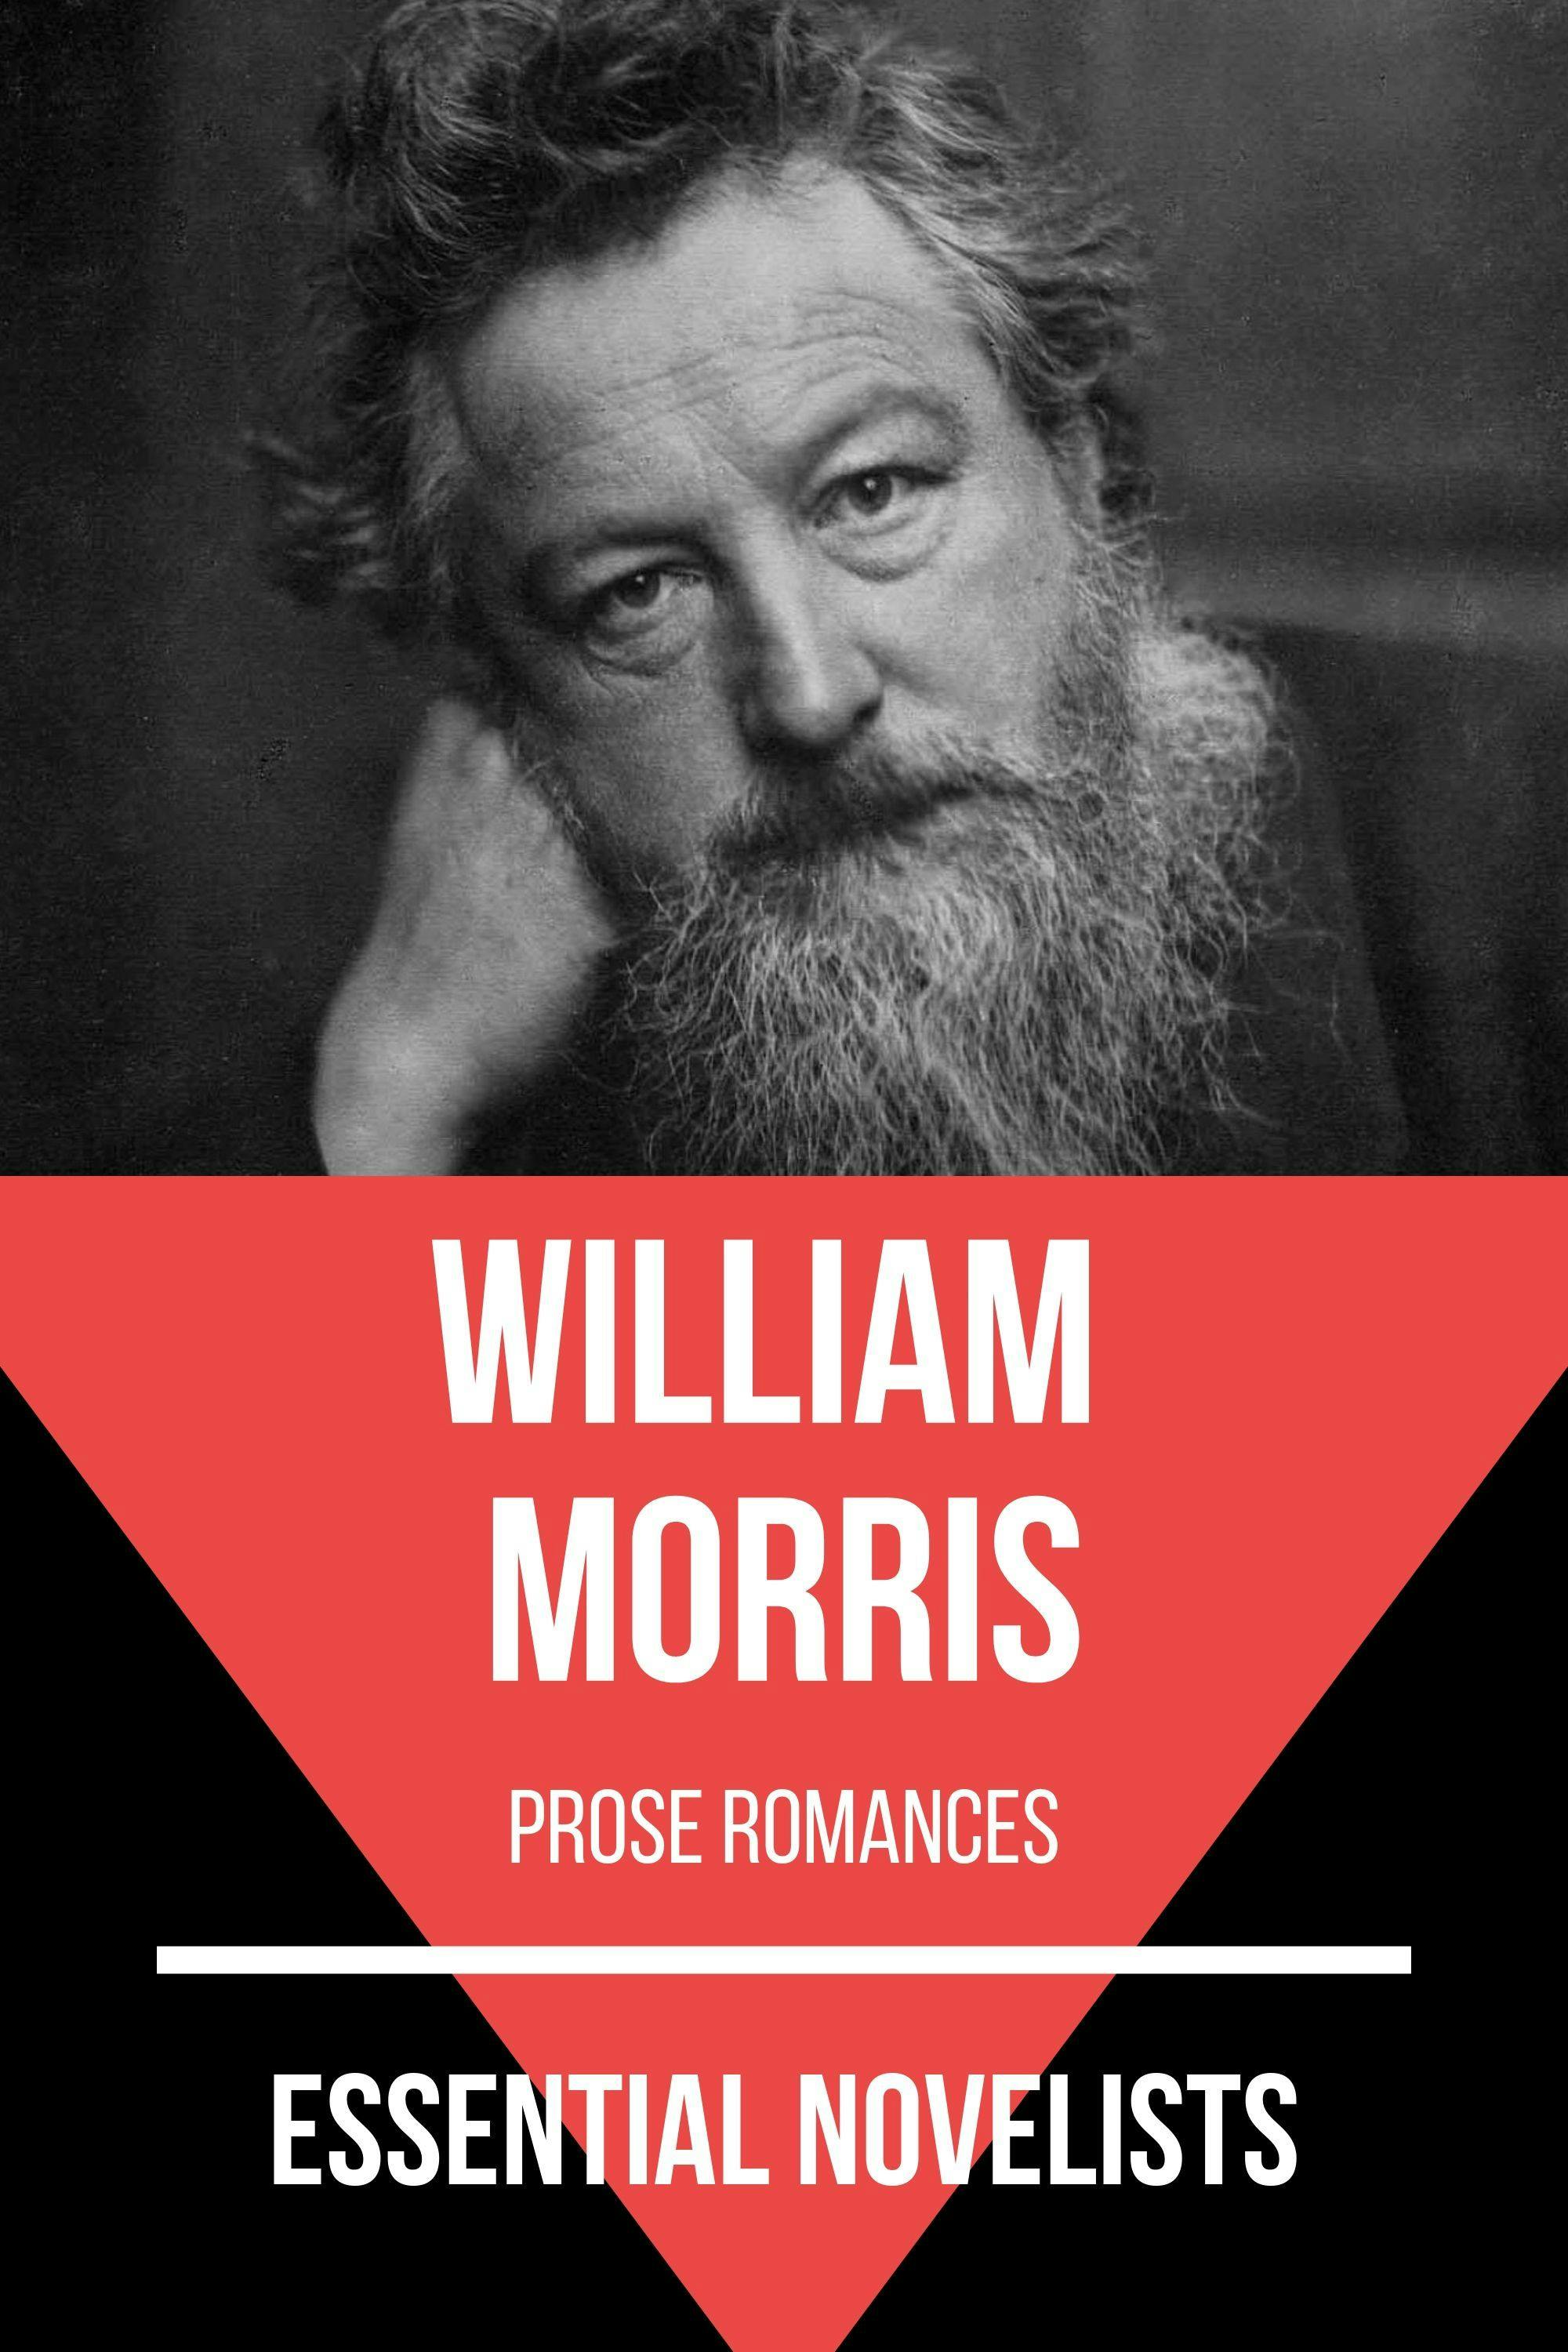 William Morris Biography